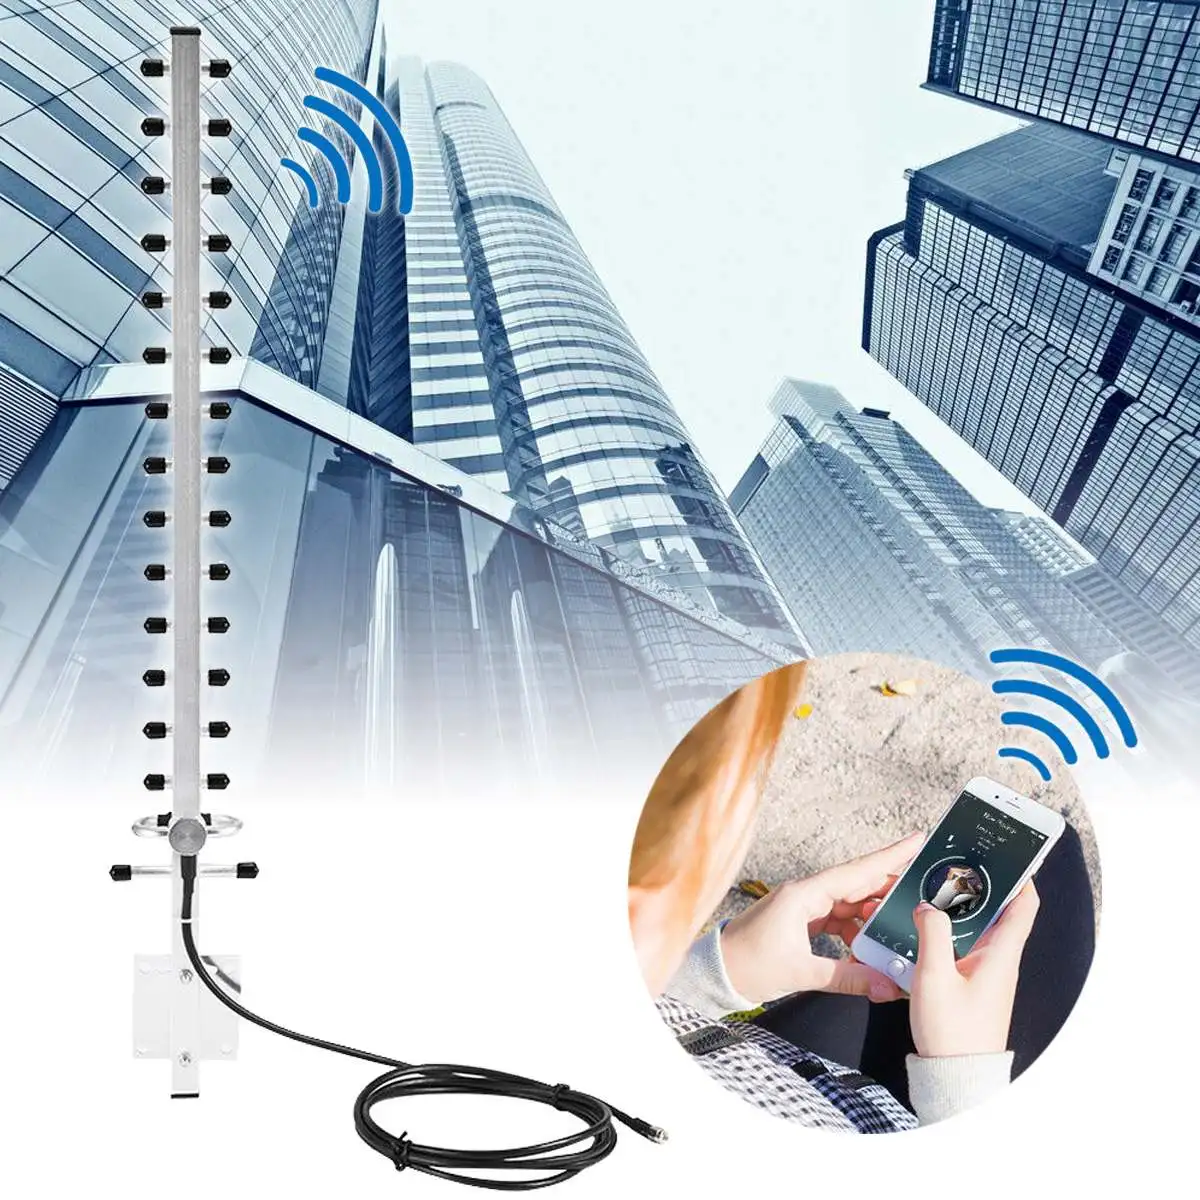 RP-SMA 2.4 GHz 25dbi Belaidžio WiFi Antenos Stiprintuvas Wifi Antenos Stiprintuvo WLAN Maršrutizatorius Lauko PCI Kortelę, USB, Universalus